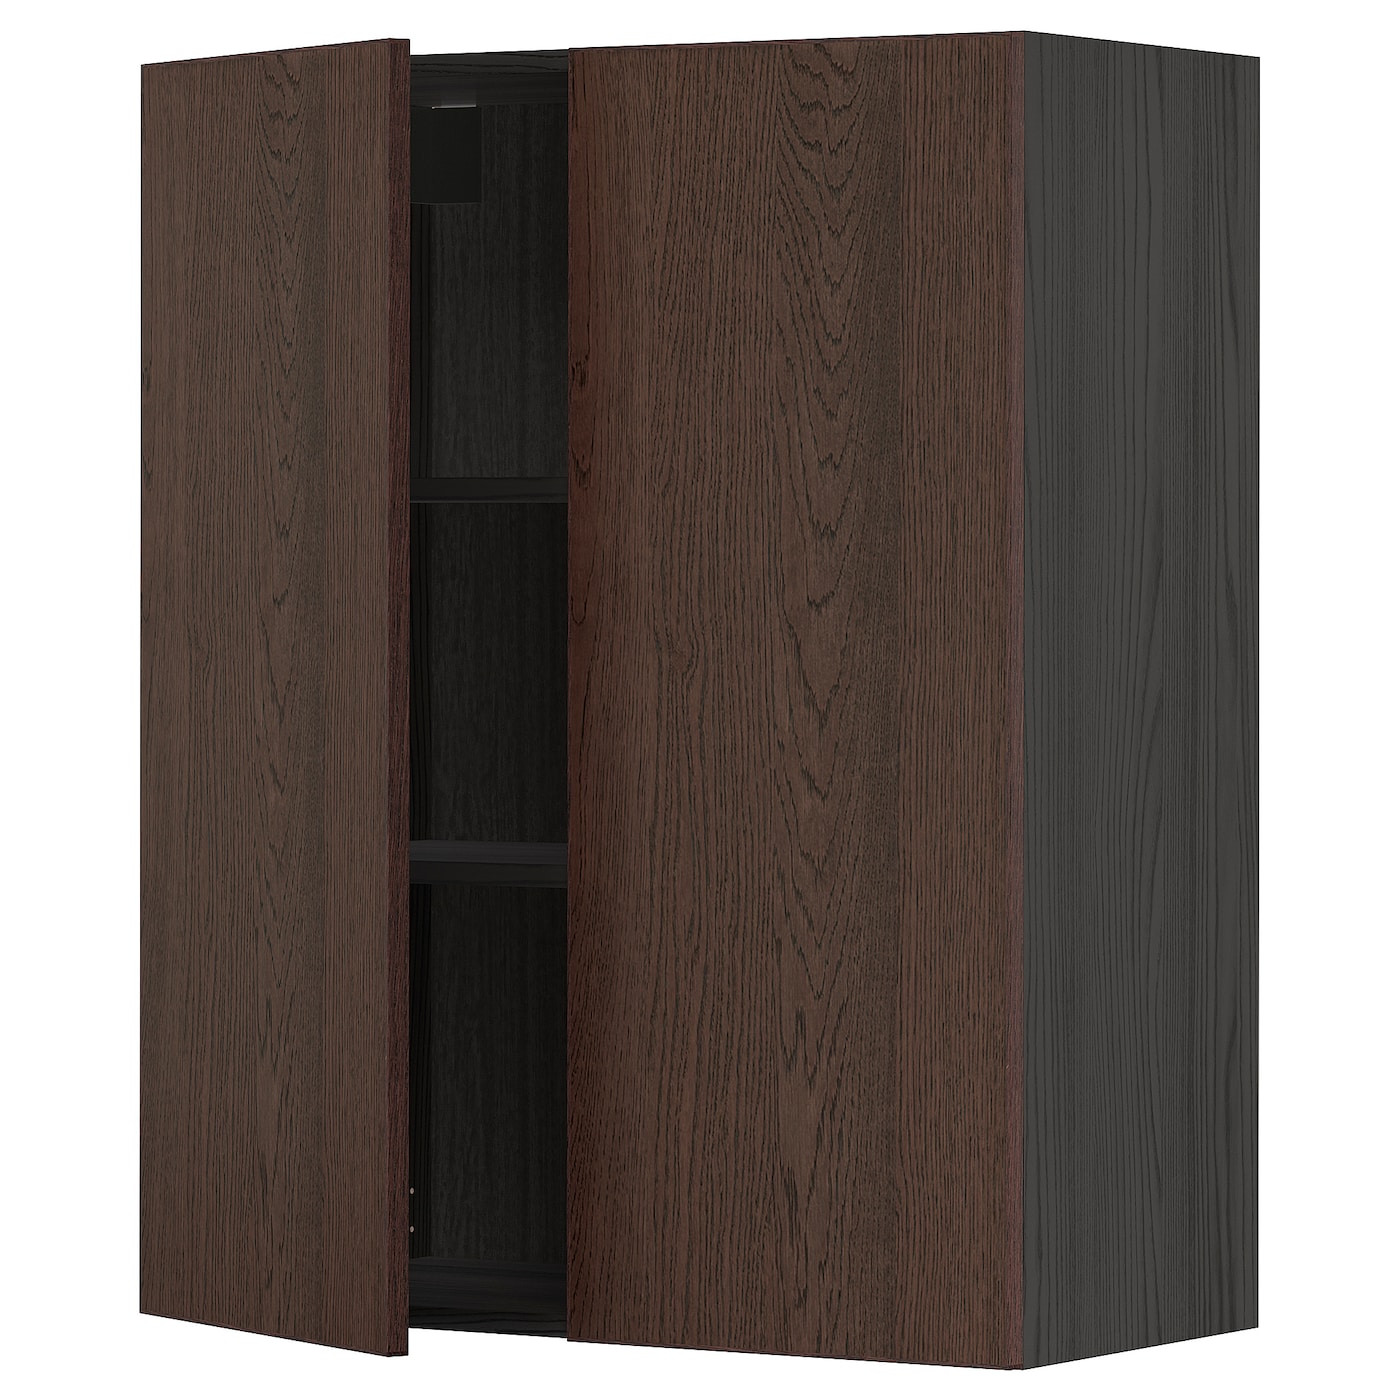 Навесной шкаф с полками/2 дверцы - METOD  IKEA/  МЕТОД ИКЕА, 100х80 см, черный/коричневый